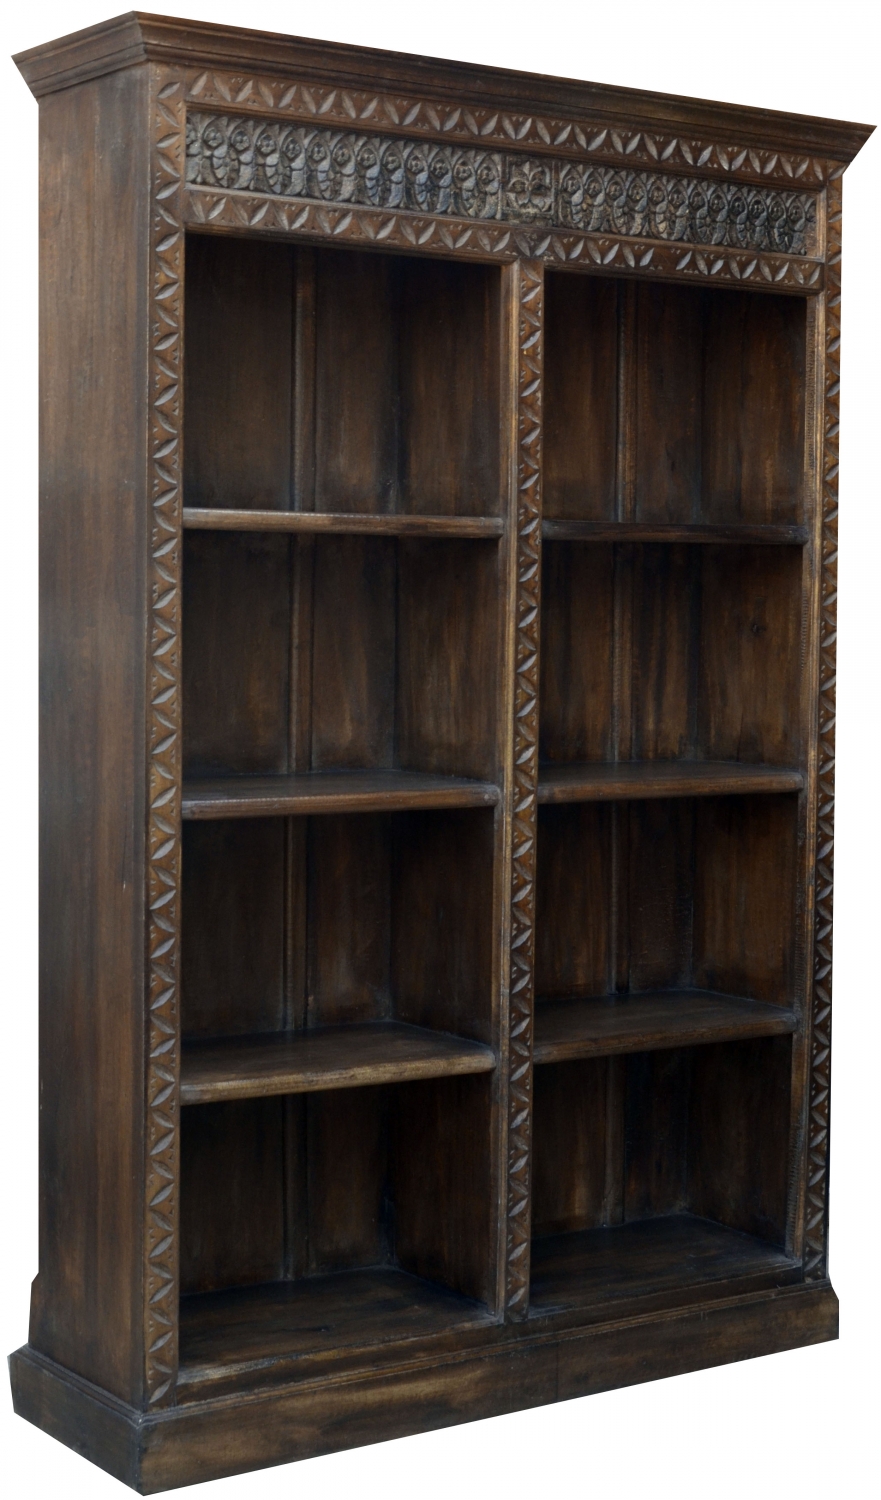 Holz-Regal mit Verzierungen | Guru-Shop | Aufbewahrung für Bücher & mehr